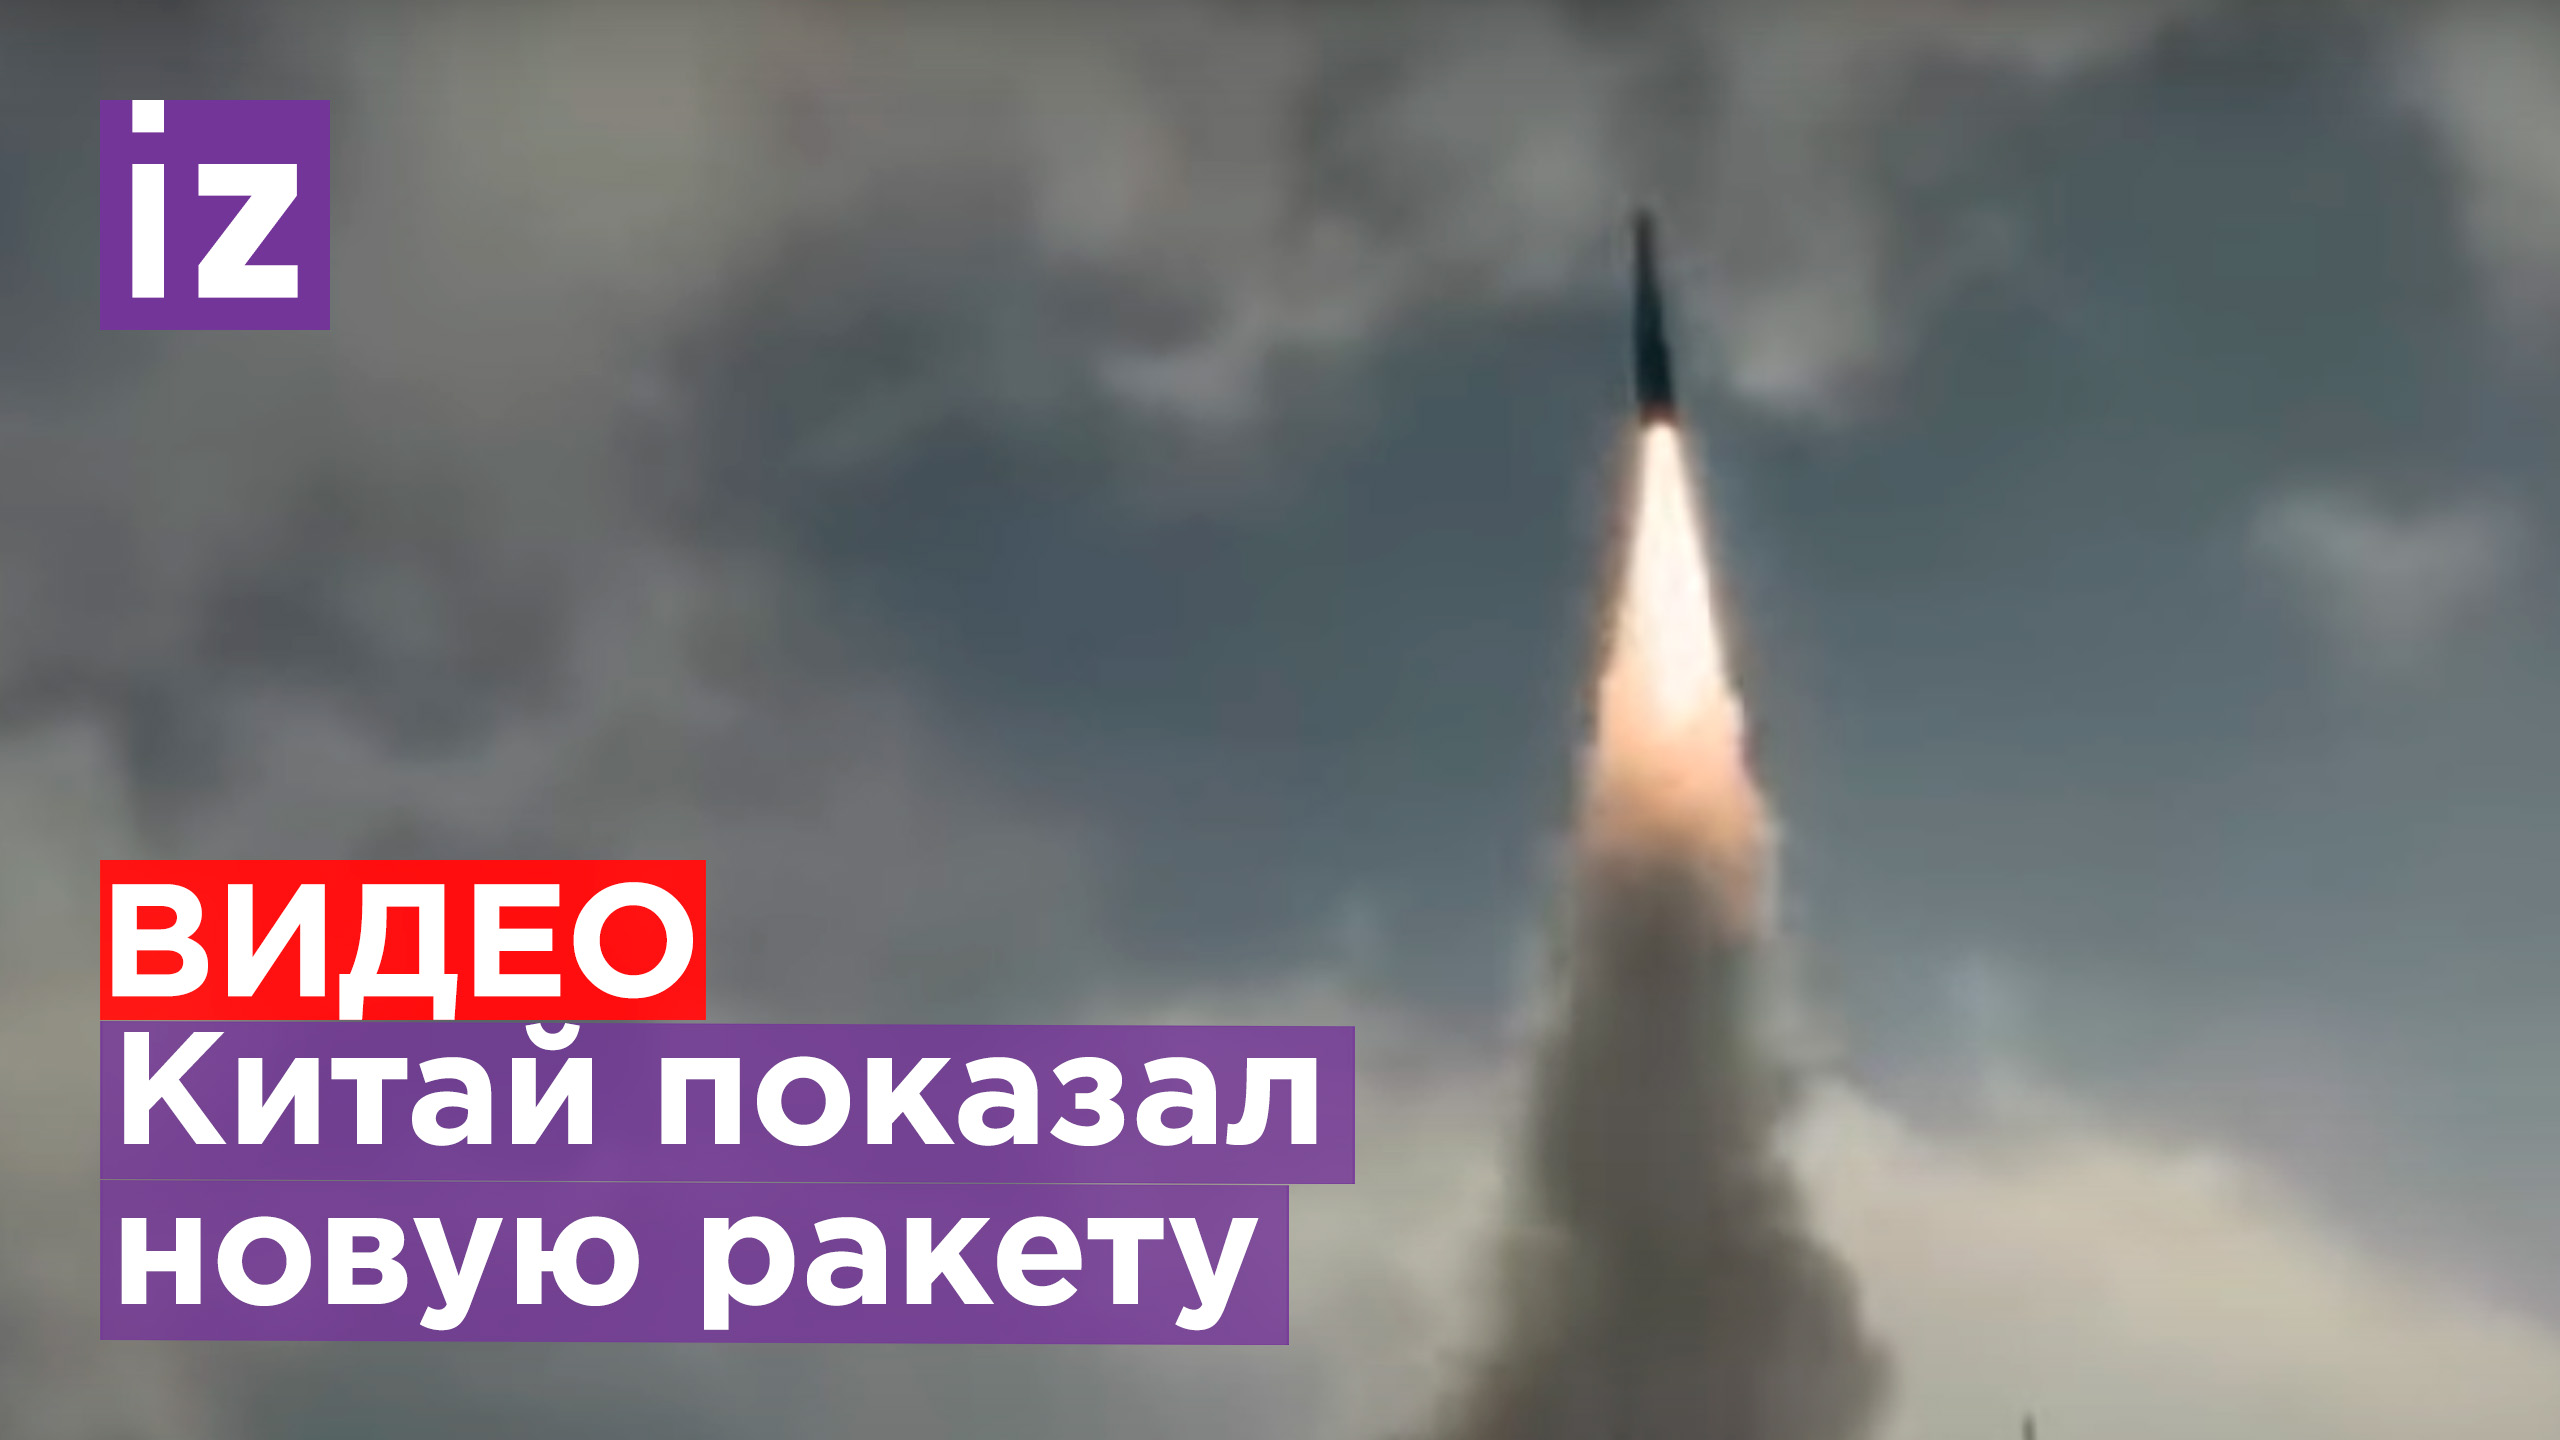 Новая ракета Китая: Yj-21 / Известия